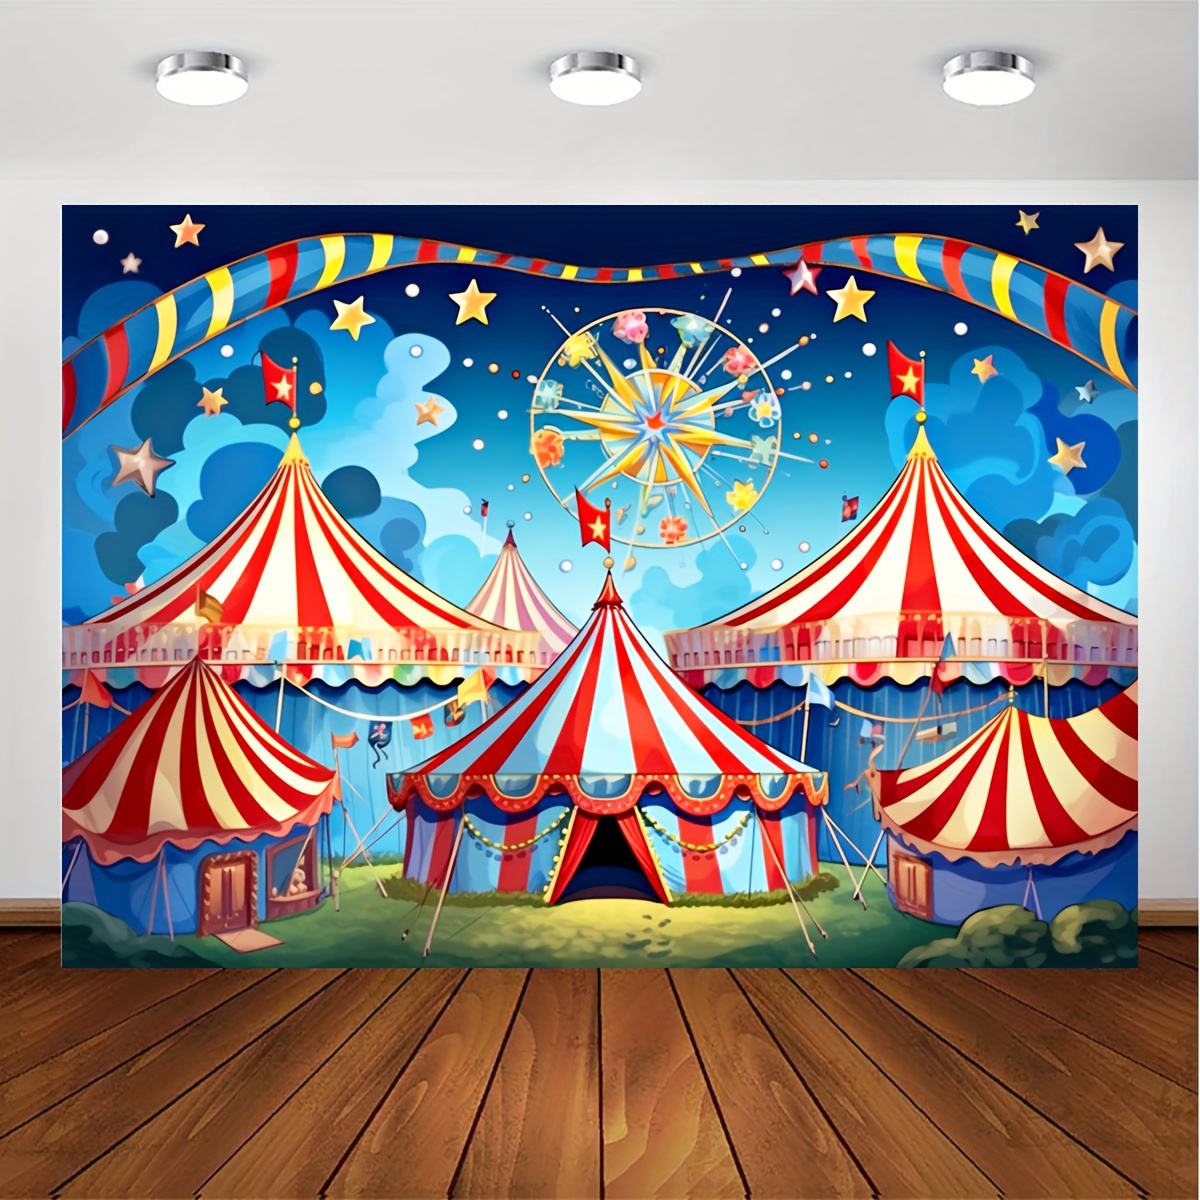 Decoración para tartas con temática de carnaval de circo, 1er cumpleaños,  temática de circo, accesorios para cabina de fotos, suministros de